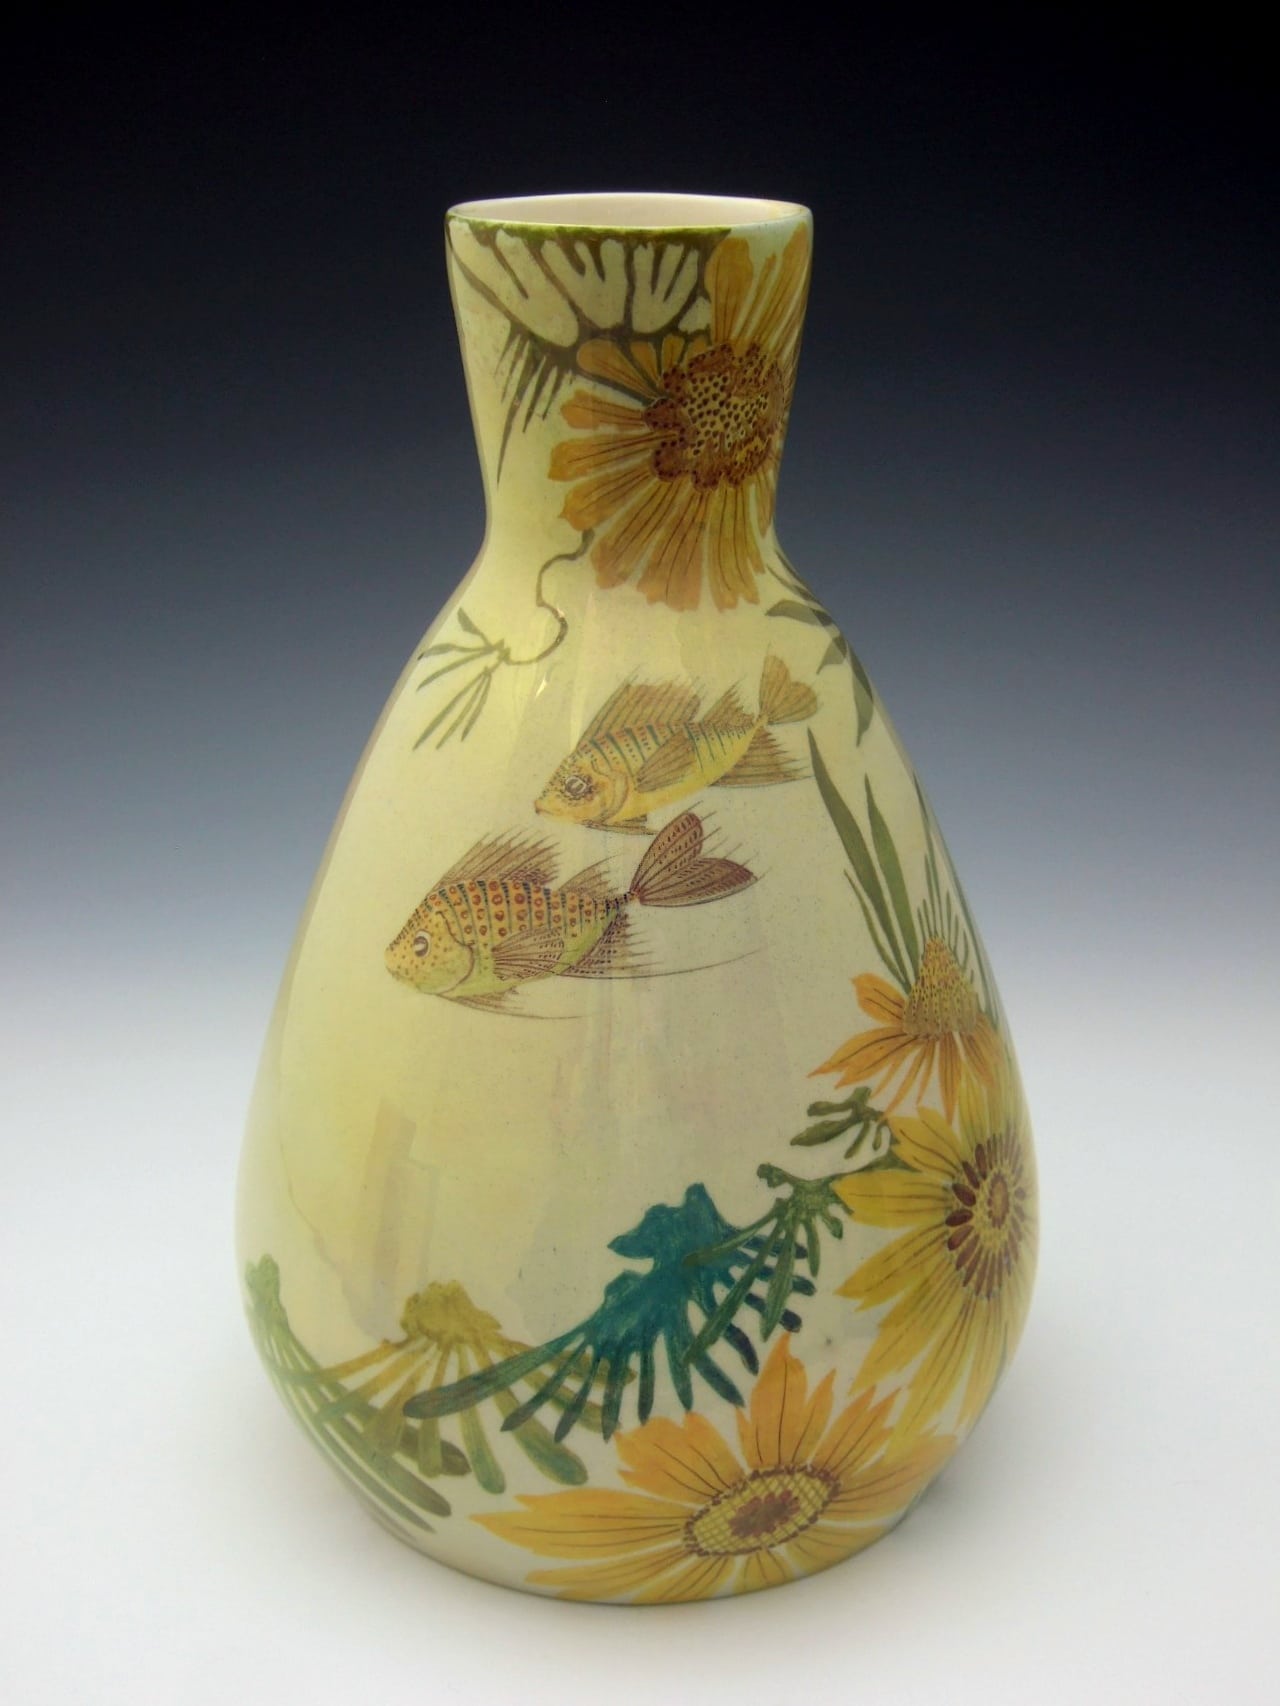 A Haga Lanooy lusterglaze vase 1906 - N.V. Plateelbakkerij Haga Purmerend